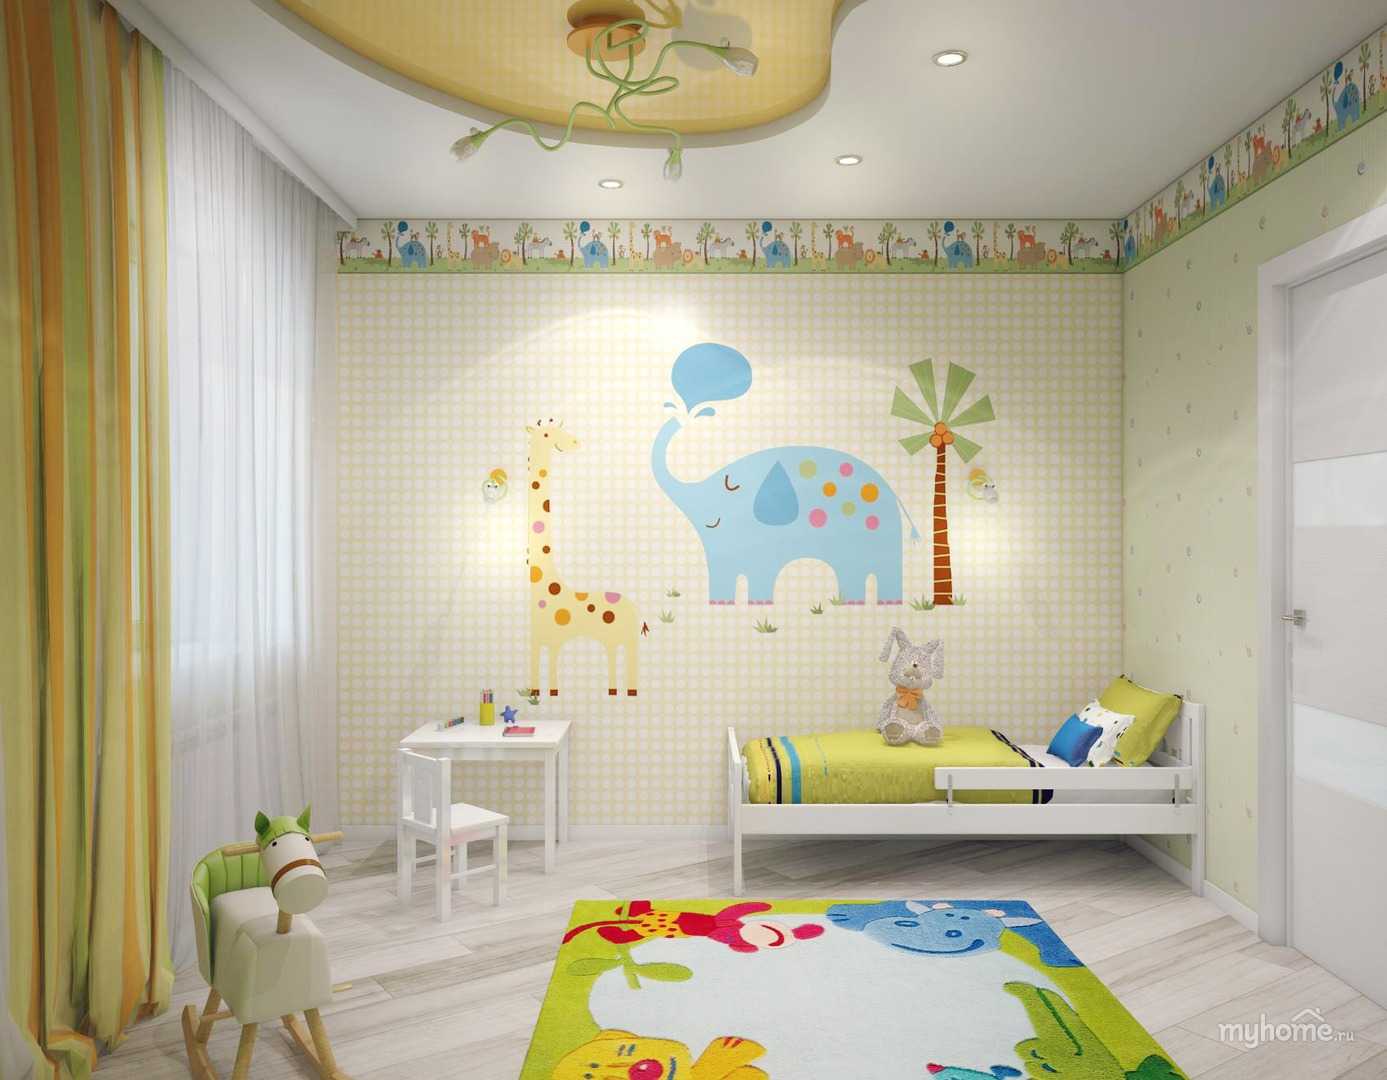 Обои в детскую комнату для мальчиков: виды, цвет, дизайн, фото, комбинирование